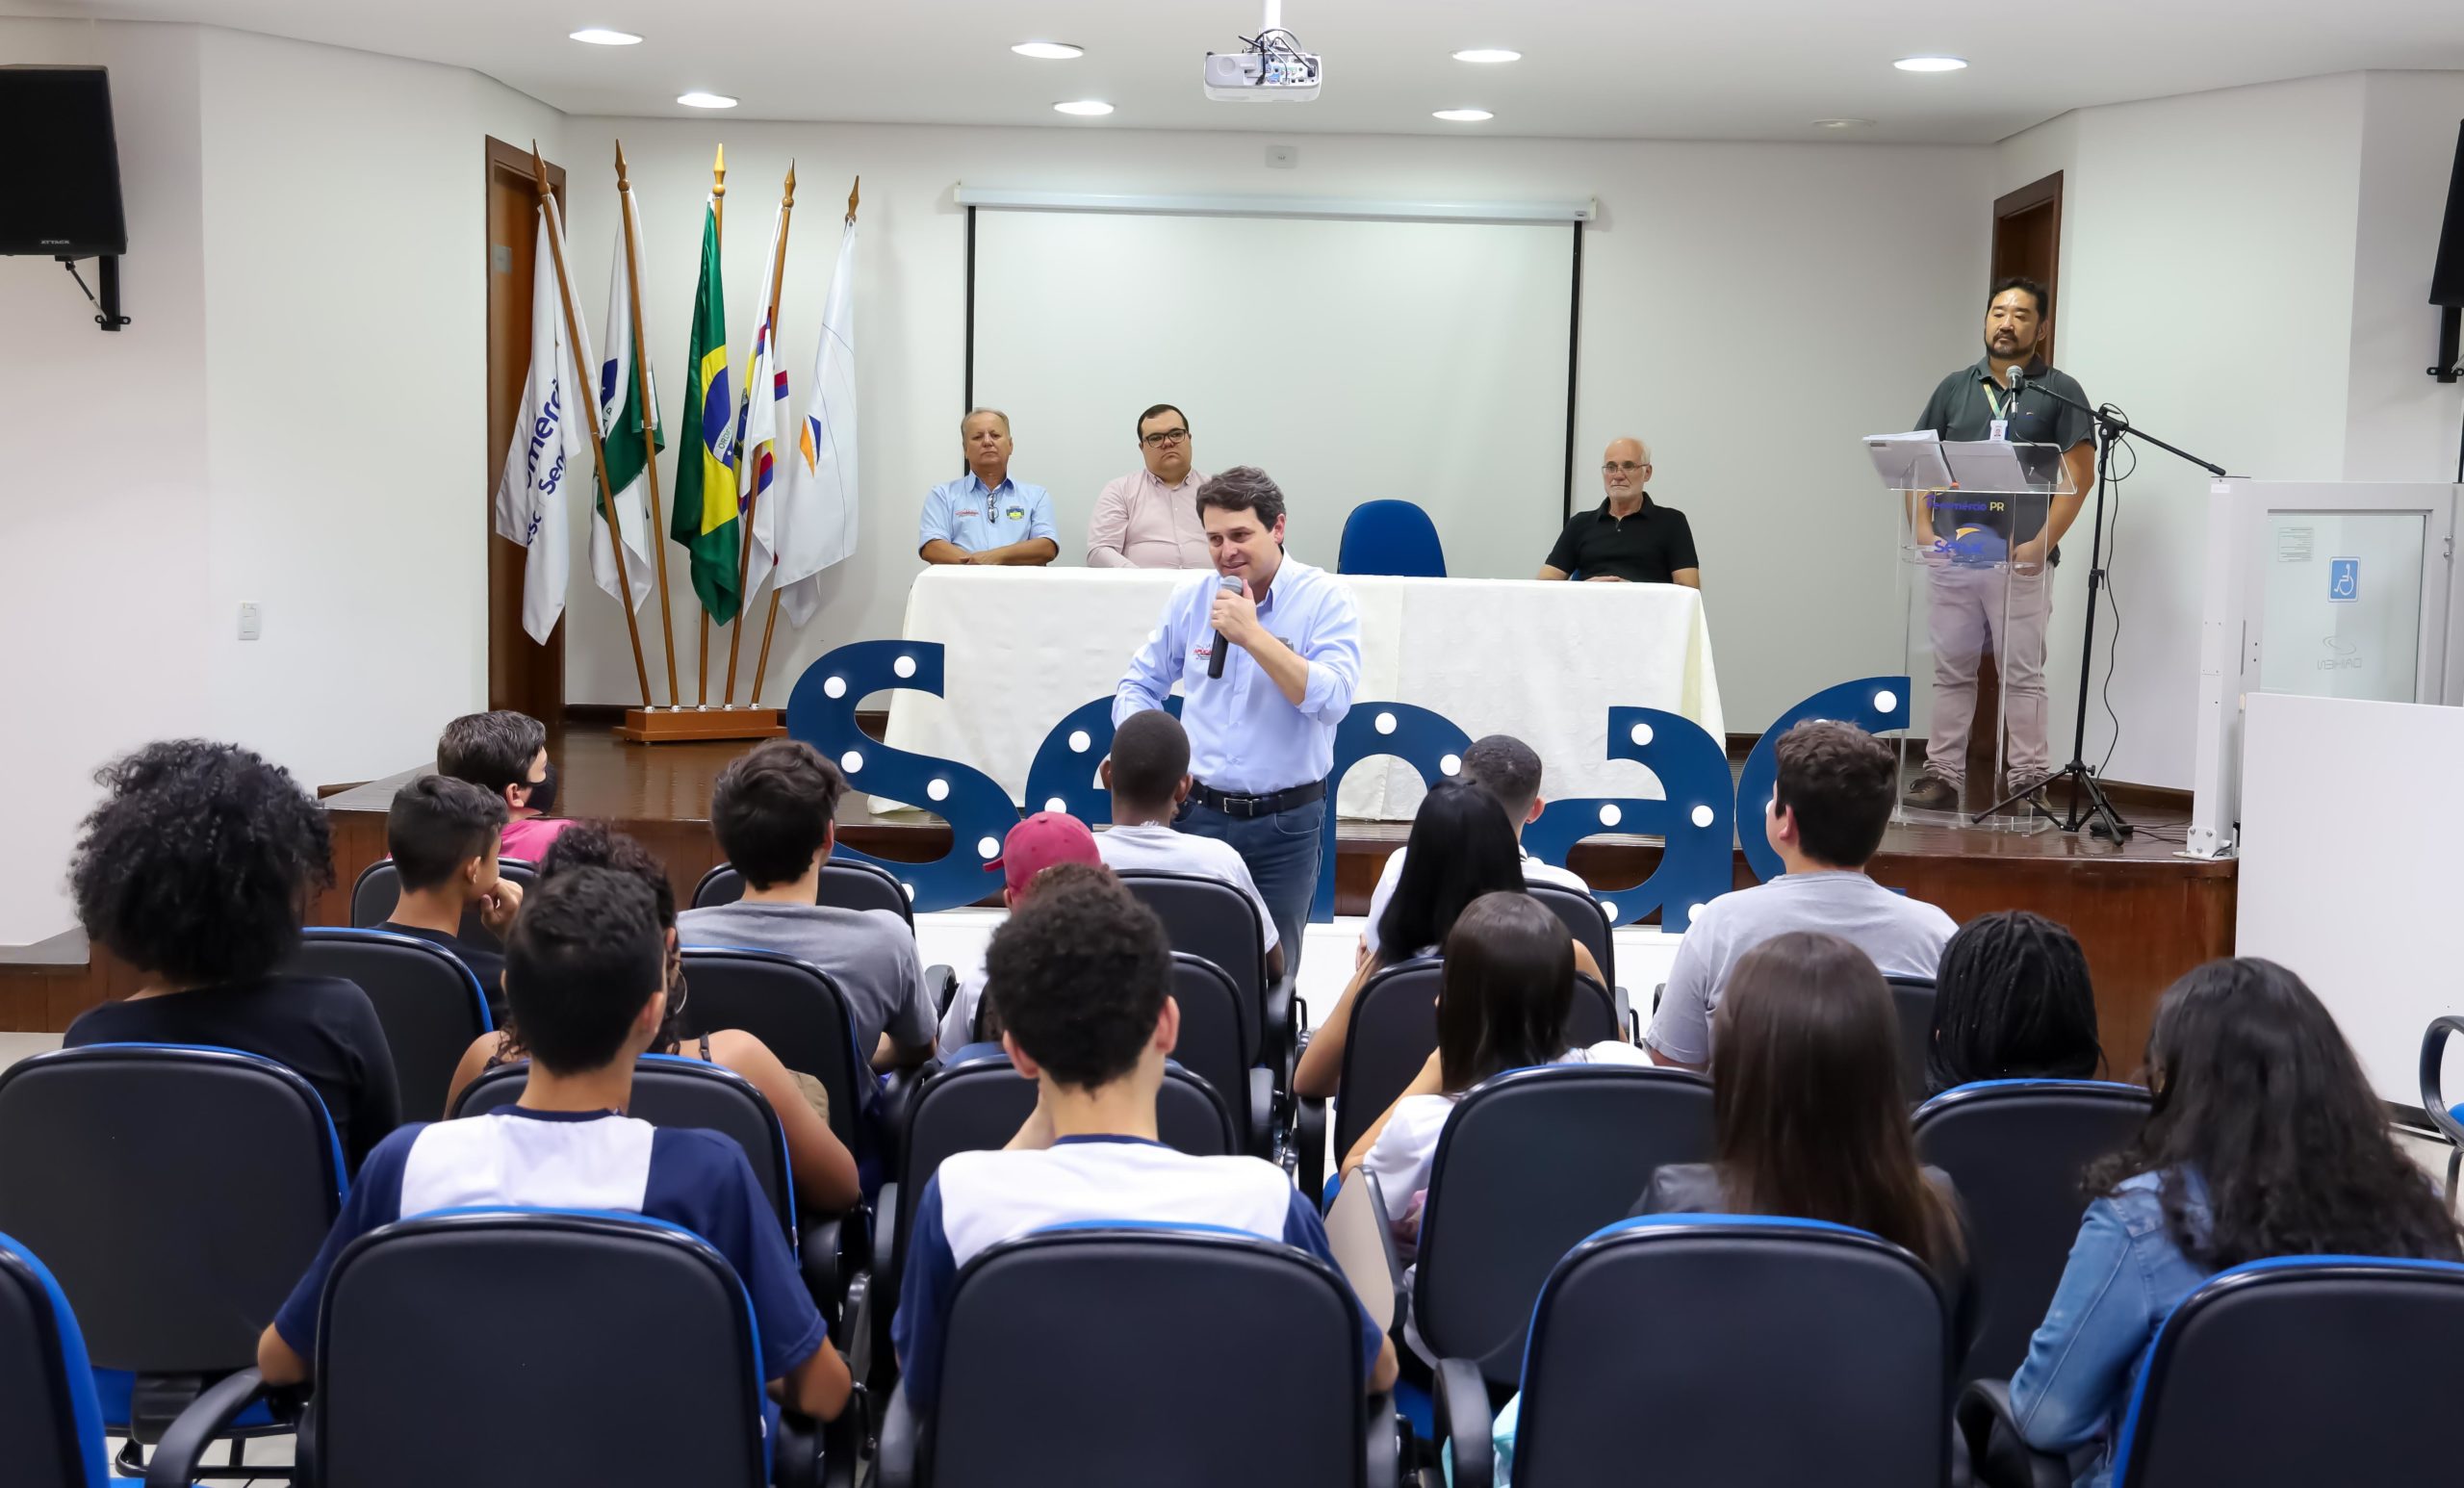 Alunos da rede municipal participam de Campeonato de Xadrez - Prefeitura de  Bragança Paulista